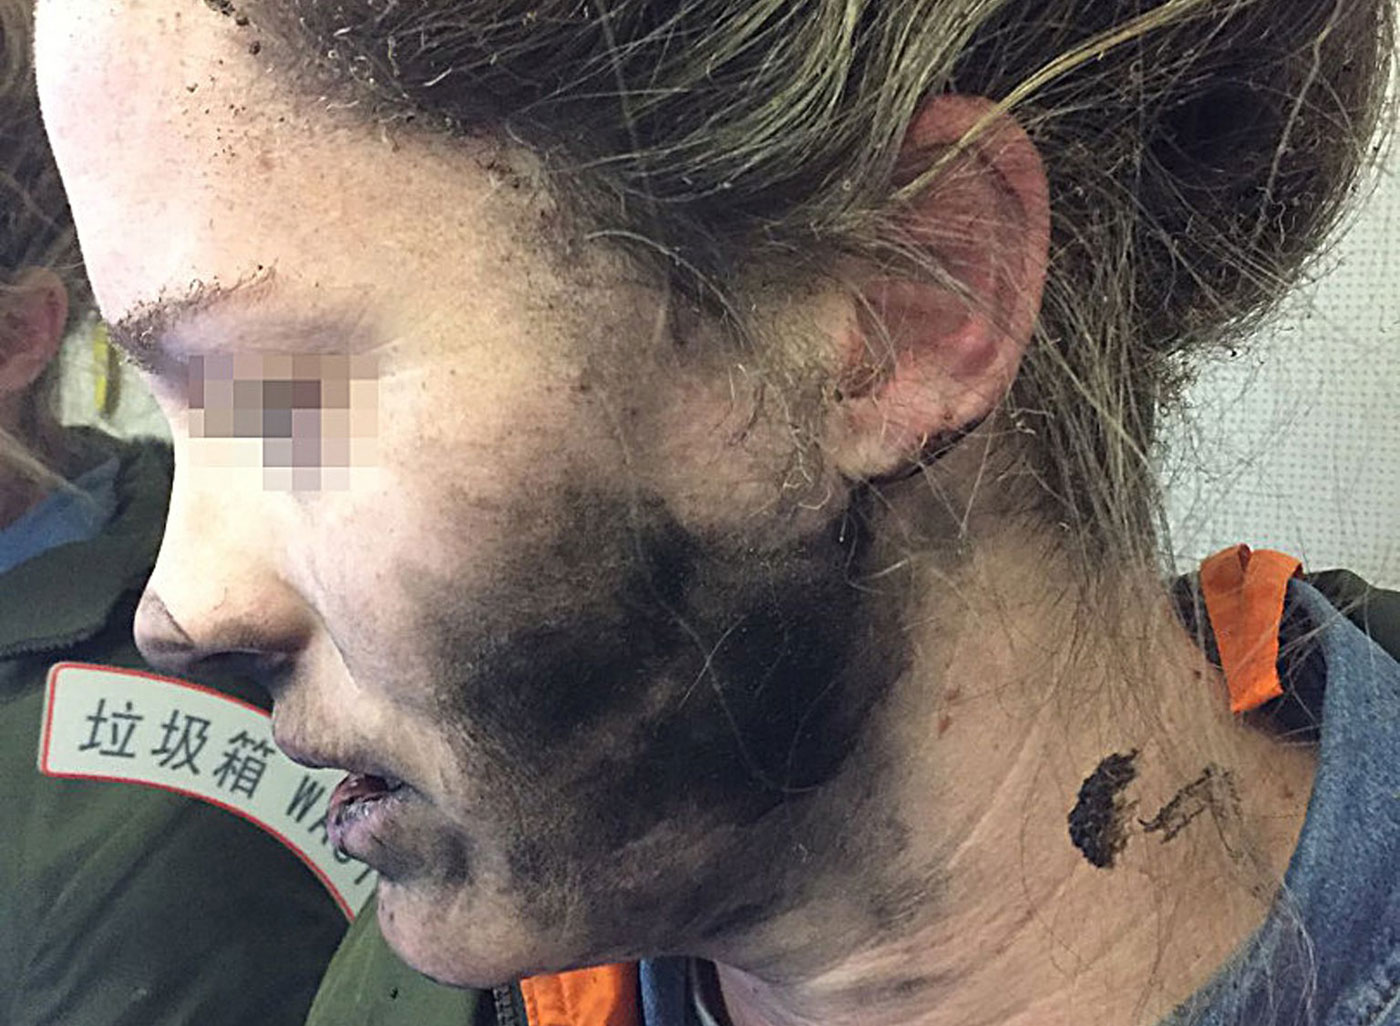 Una mujer sufre quemaduras al explotarle auriculares en un vuelo hacia Australia (fotos)